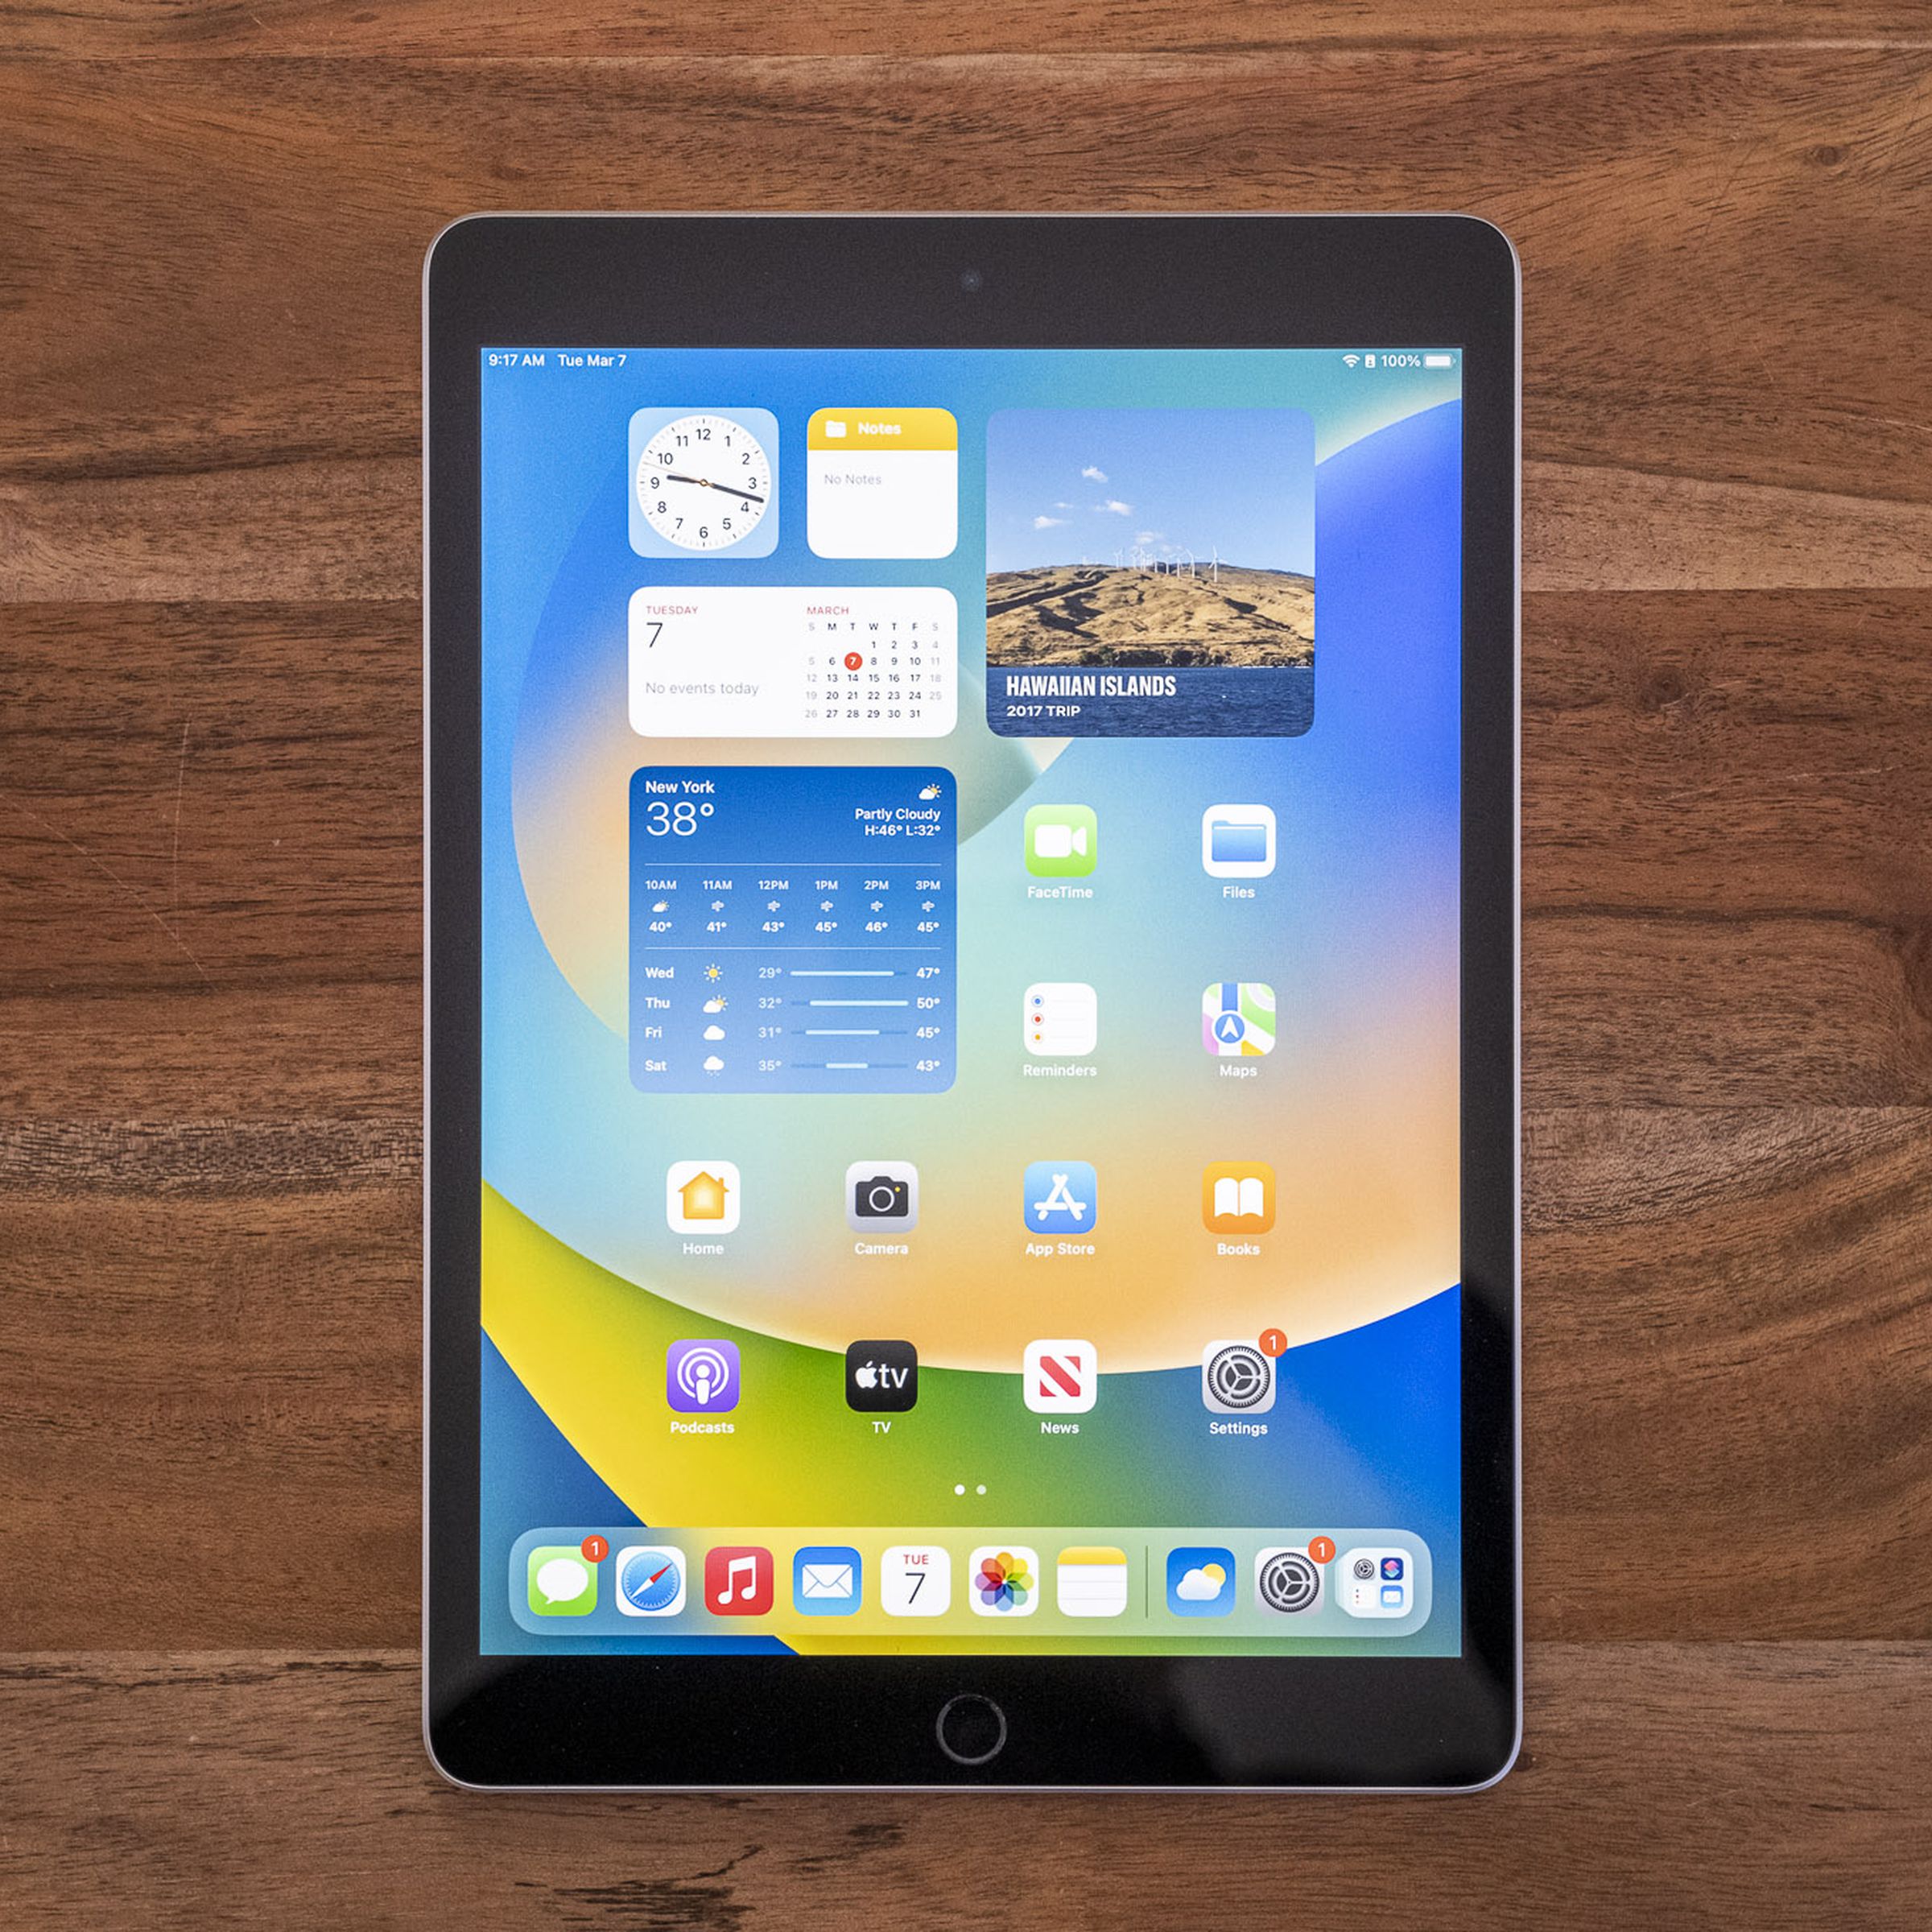 جهاز iPad من الجيل التاسع على طاولة خشبية يُنظر إليه من أعلى إلى أسفل